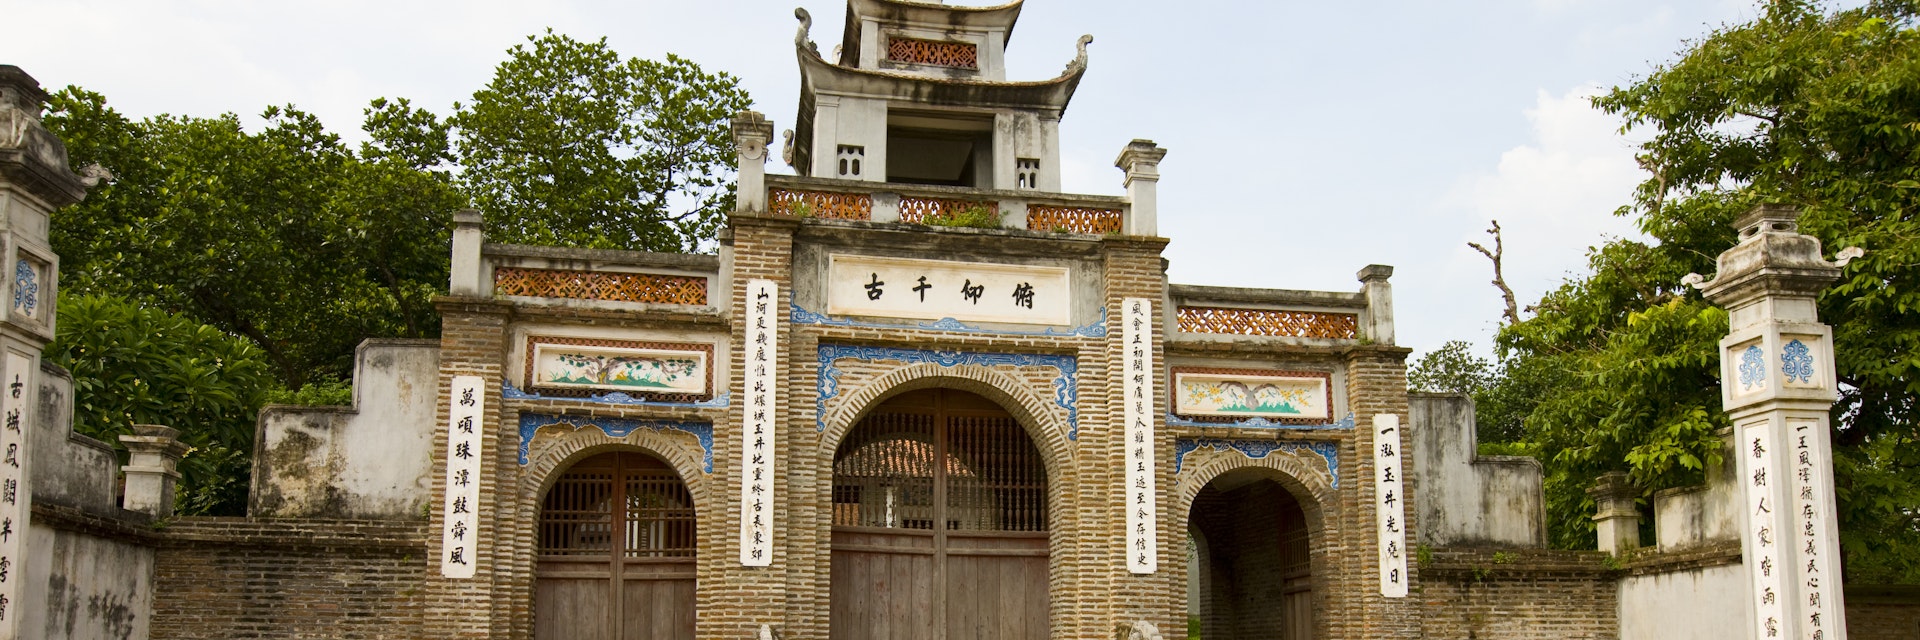 Thuc Dynasty temple, 5 August 2011, in Co Loa Citadel, near Hanoi, Vietnam.